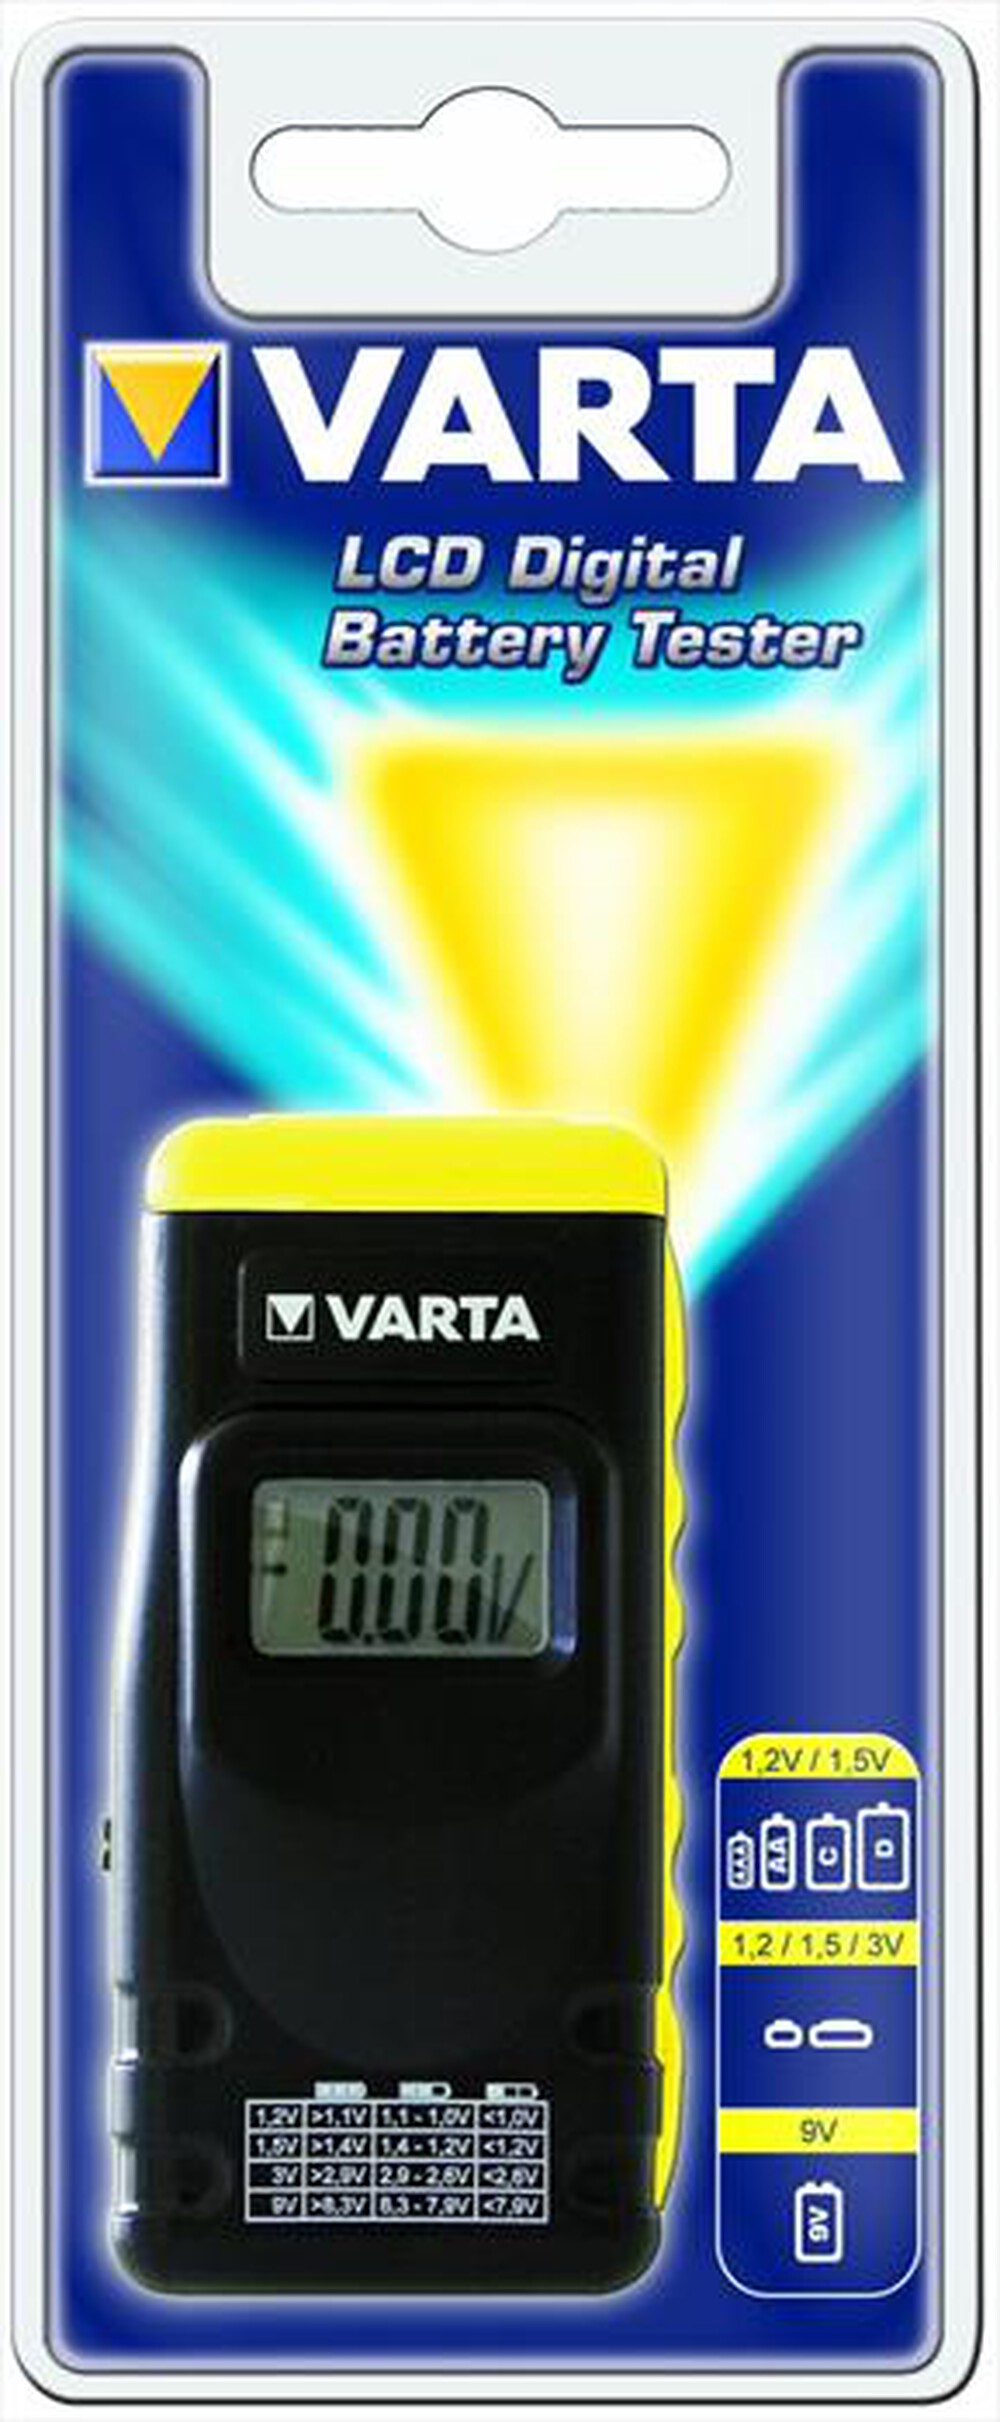 "VARTA - Battery Tester"